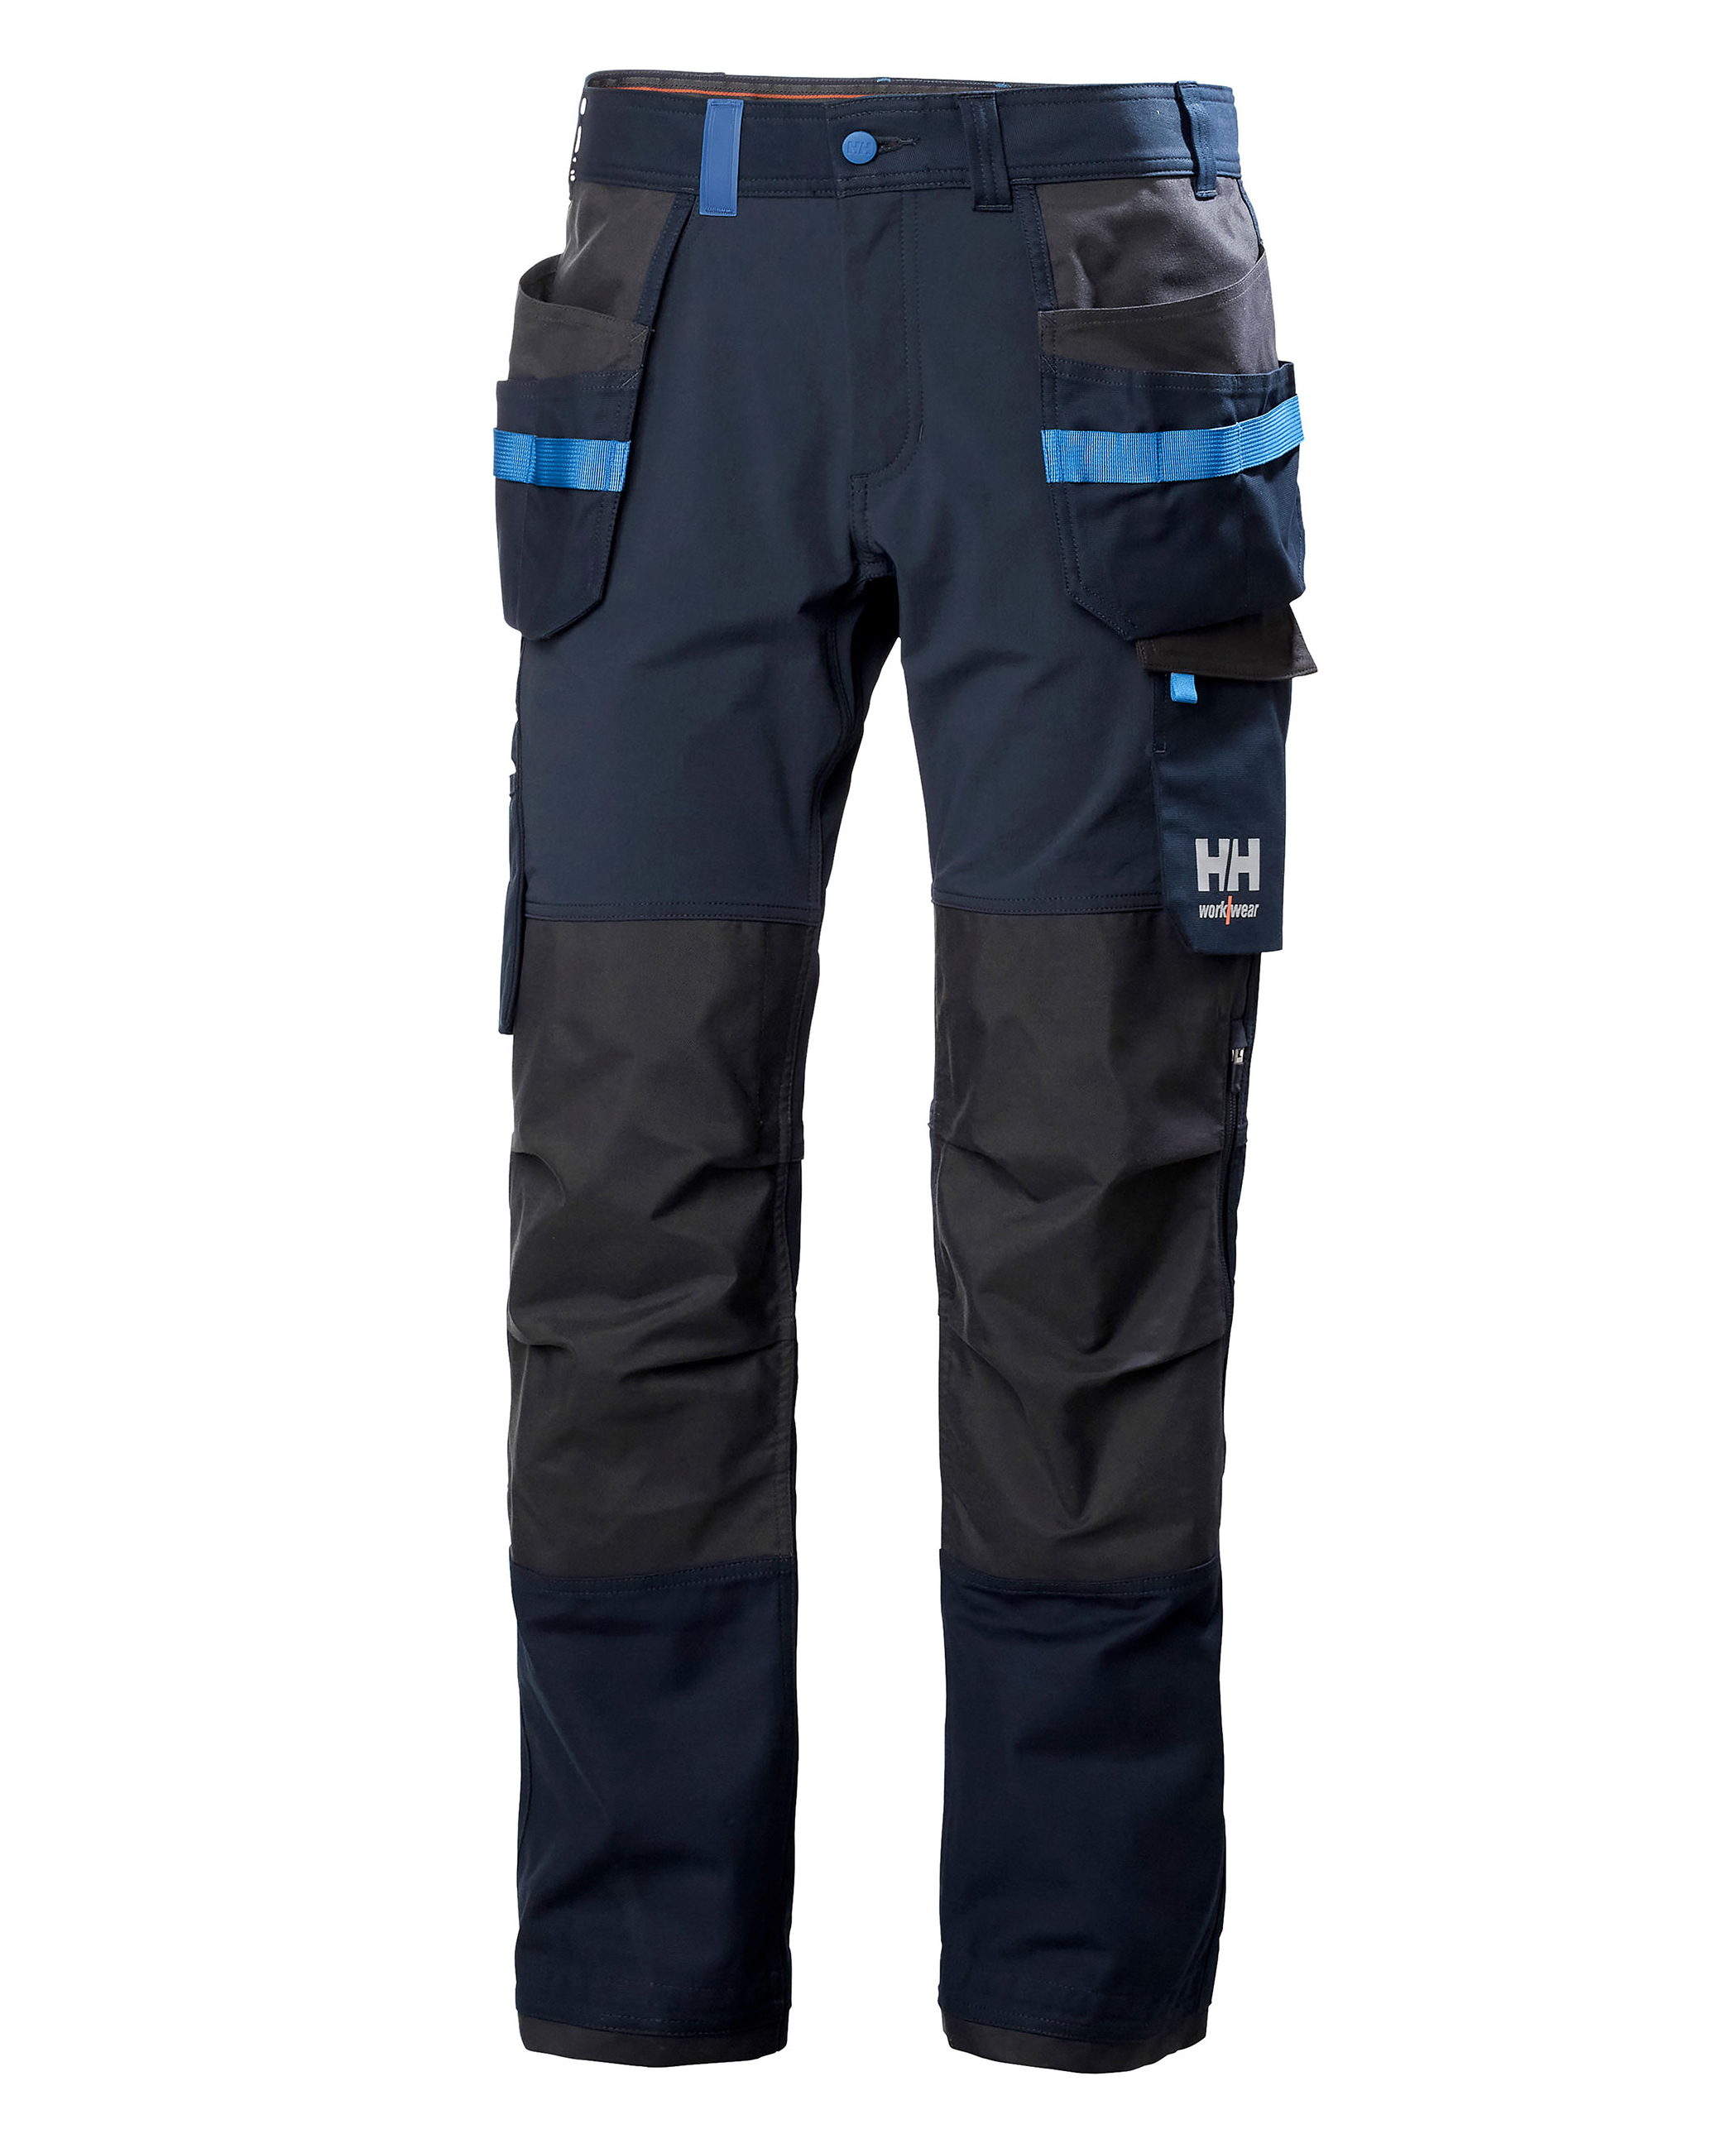 Pantalon Helly Hansen Oxford 4X Construction Pant bleu marine 77405